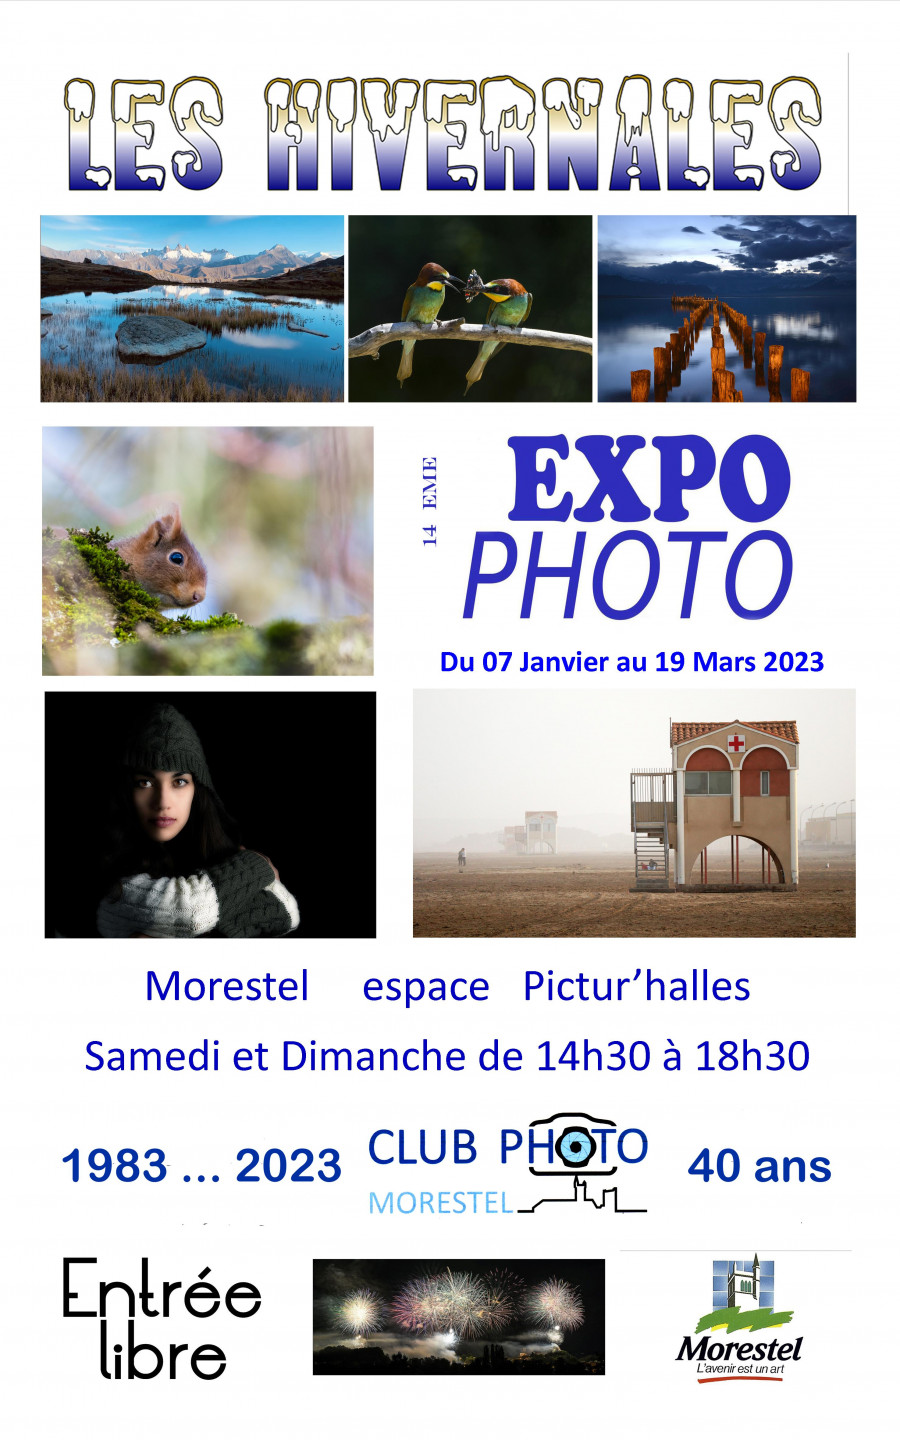 Club Photo de Morestel - Les Hivernales 2023